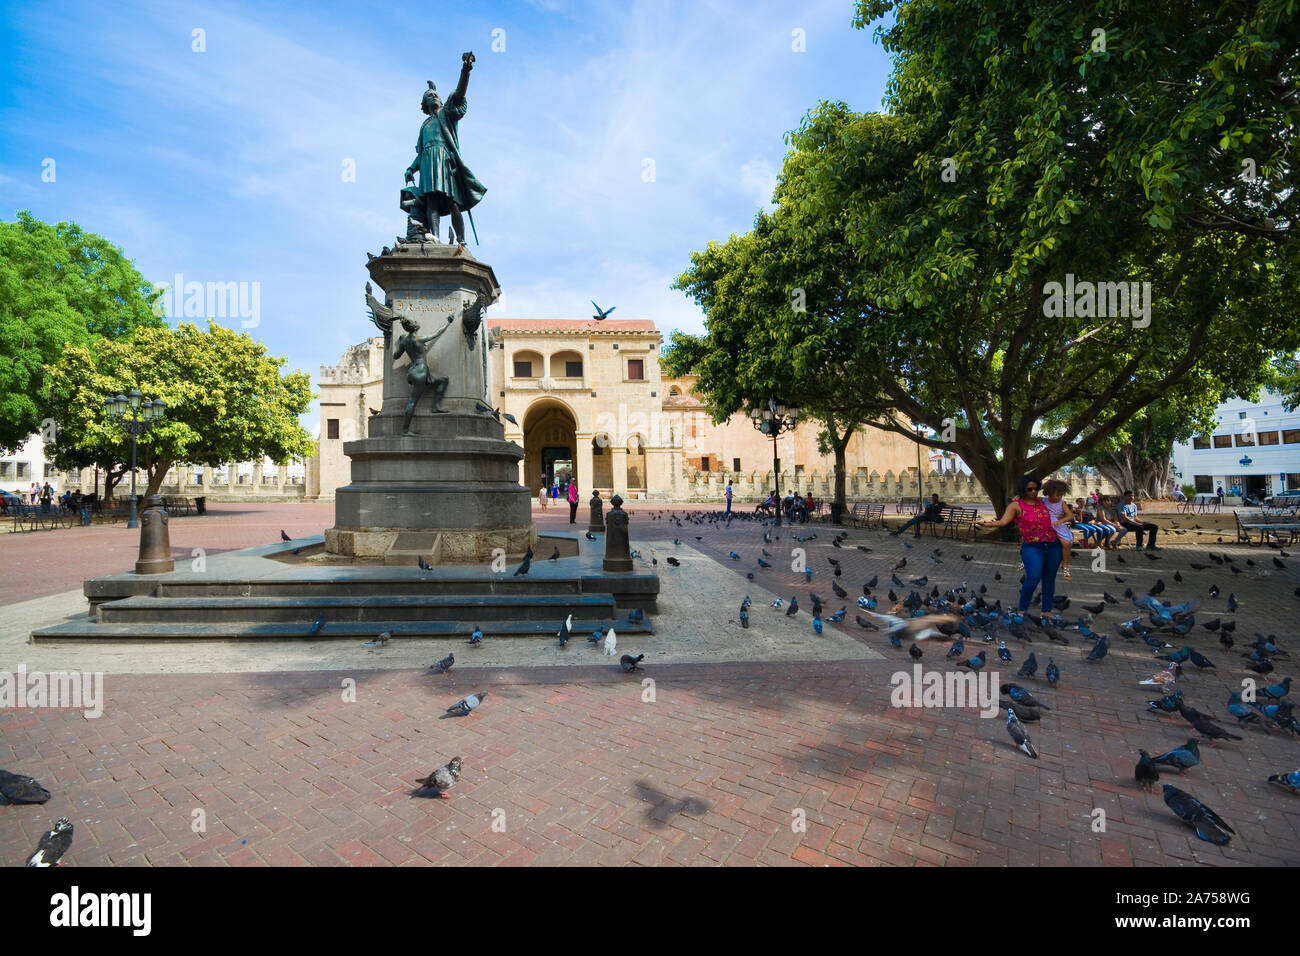 SANTO DOMINGO, DOMINIKANISCHE REPUBLIK - 26. JUNI 2019: Statue von Columbus in Parque Colon - Hauptplatz der historischen Viertel der Stadt, in der Nähe der ältesten c Stockfoto